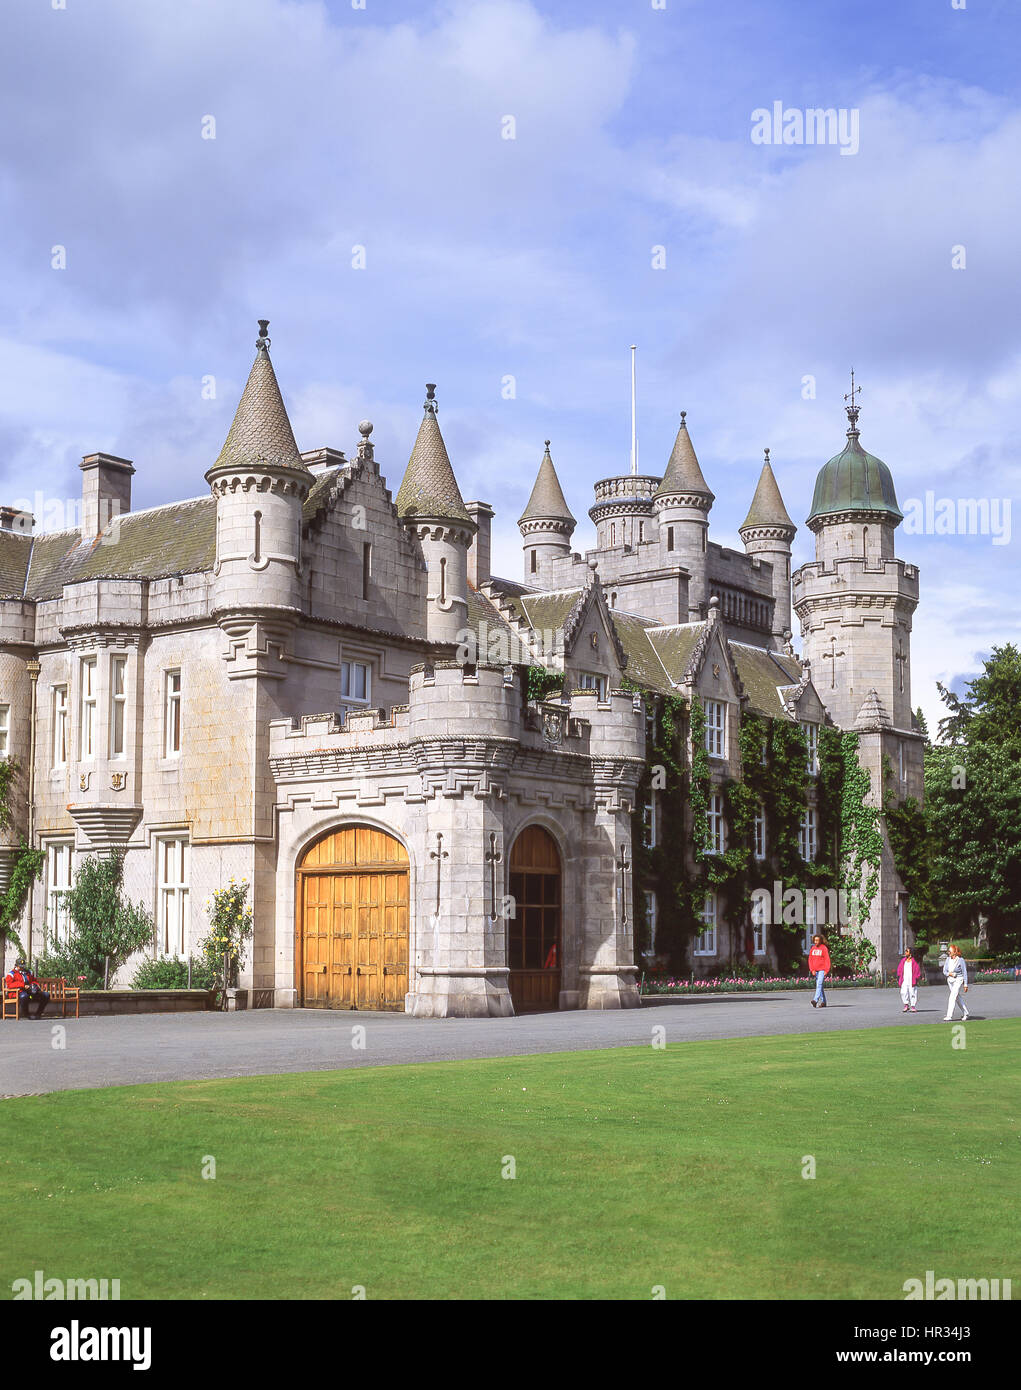 Le château de Balmoral et de jardins, le Royal Deeside, Aberdeenshire, Ecosse, Royaume-Uni Banque D'Images